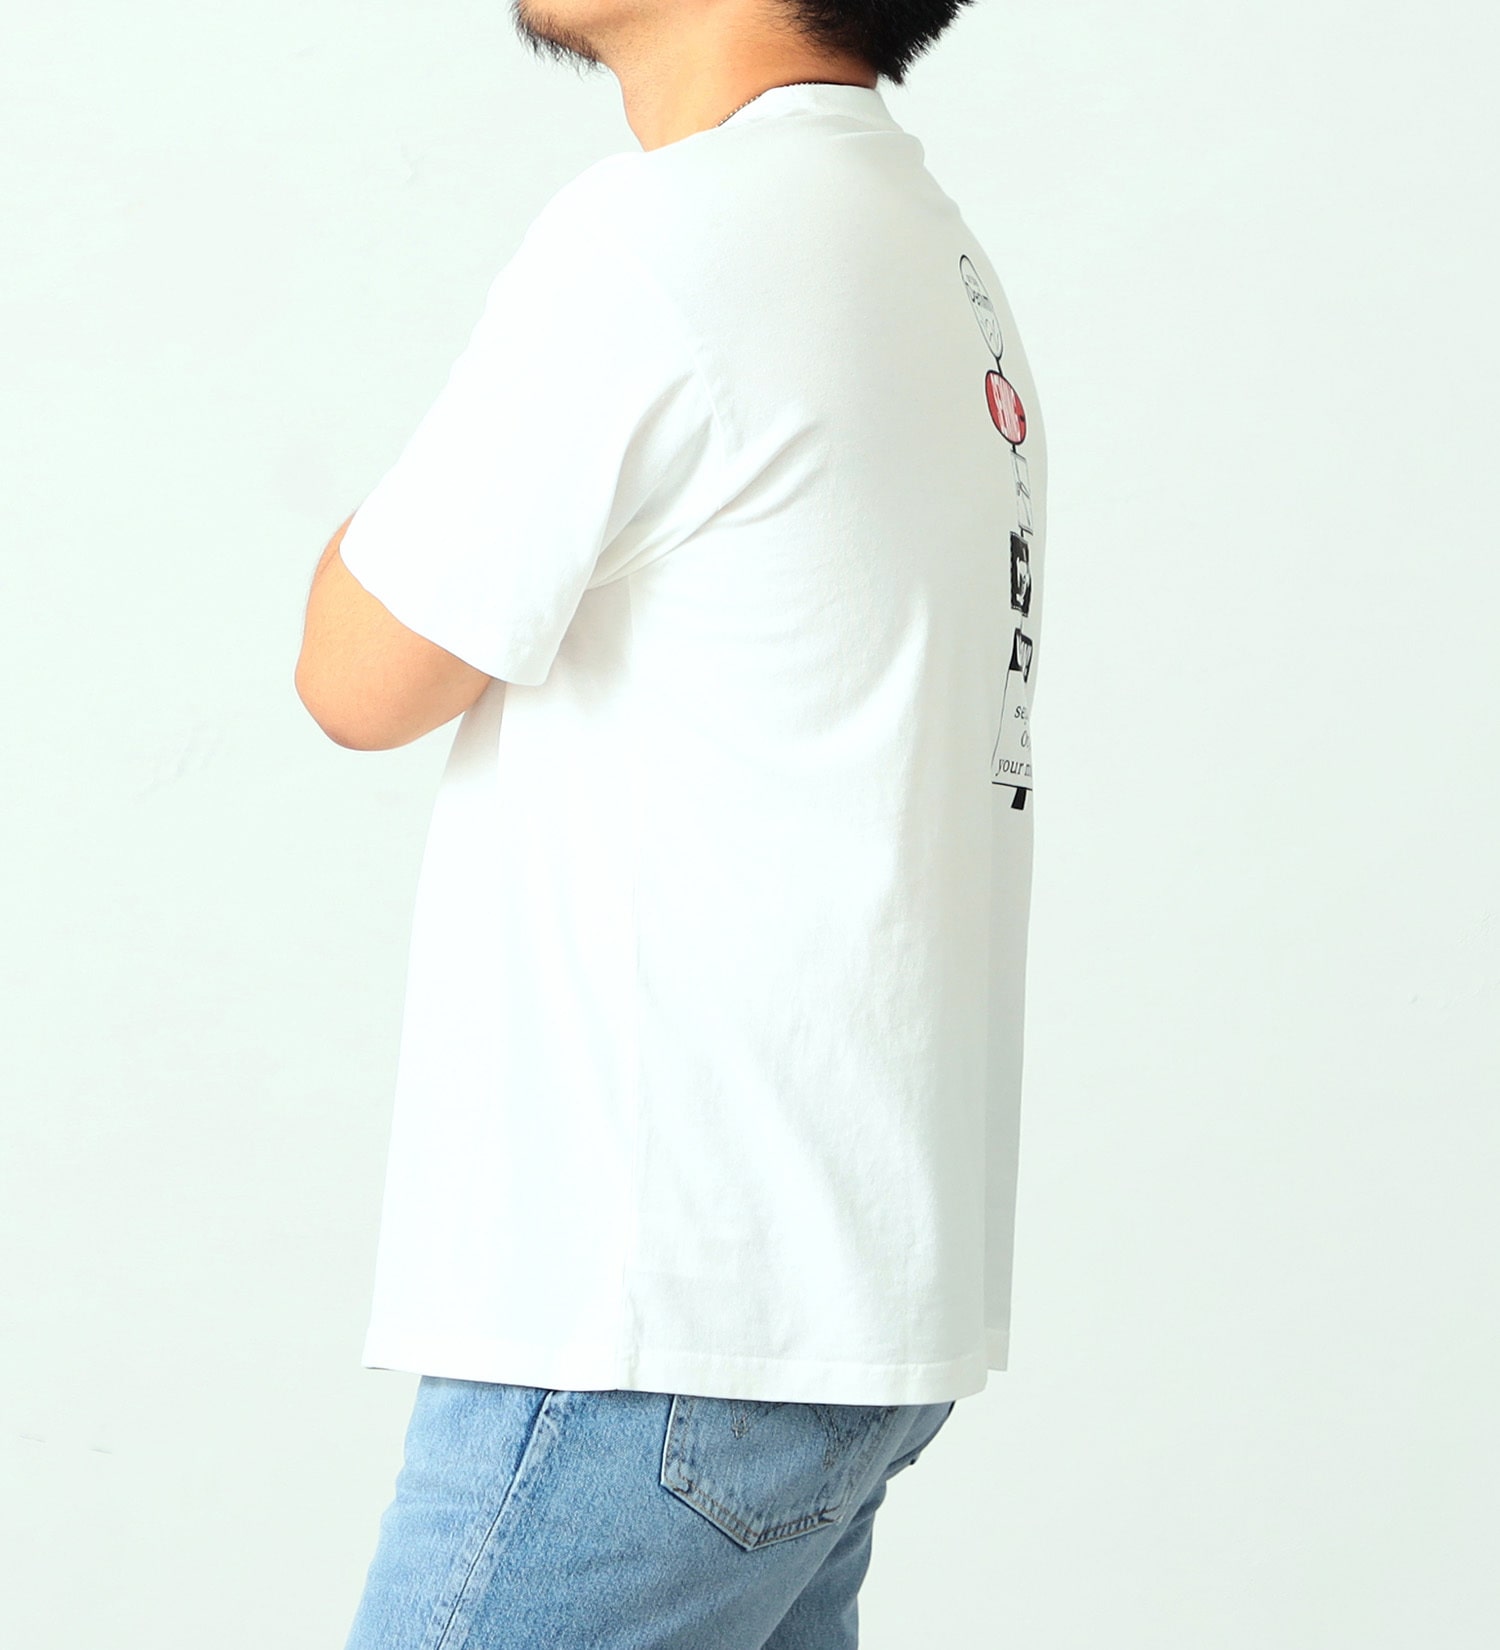 EDWIN(エドウイン)のイラストバックプリントTシャツ【アウトレット店舗・WEB限定】|トップス/Tシャツ/カットソー/メンズ|ホワイト